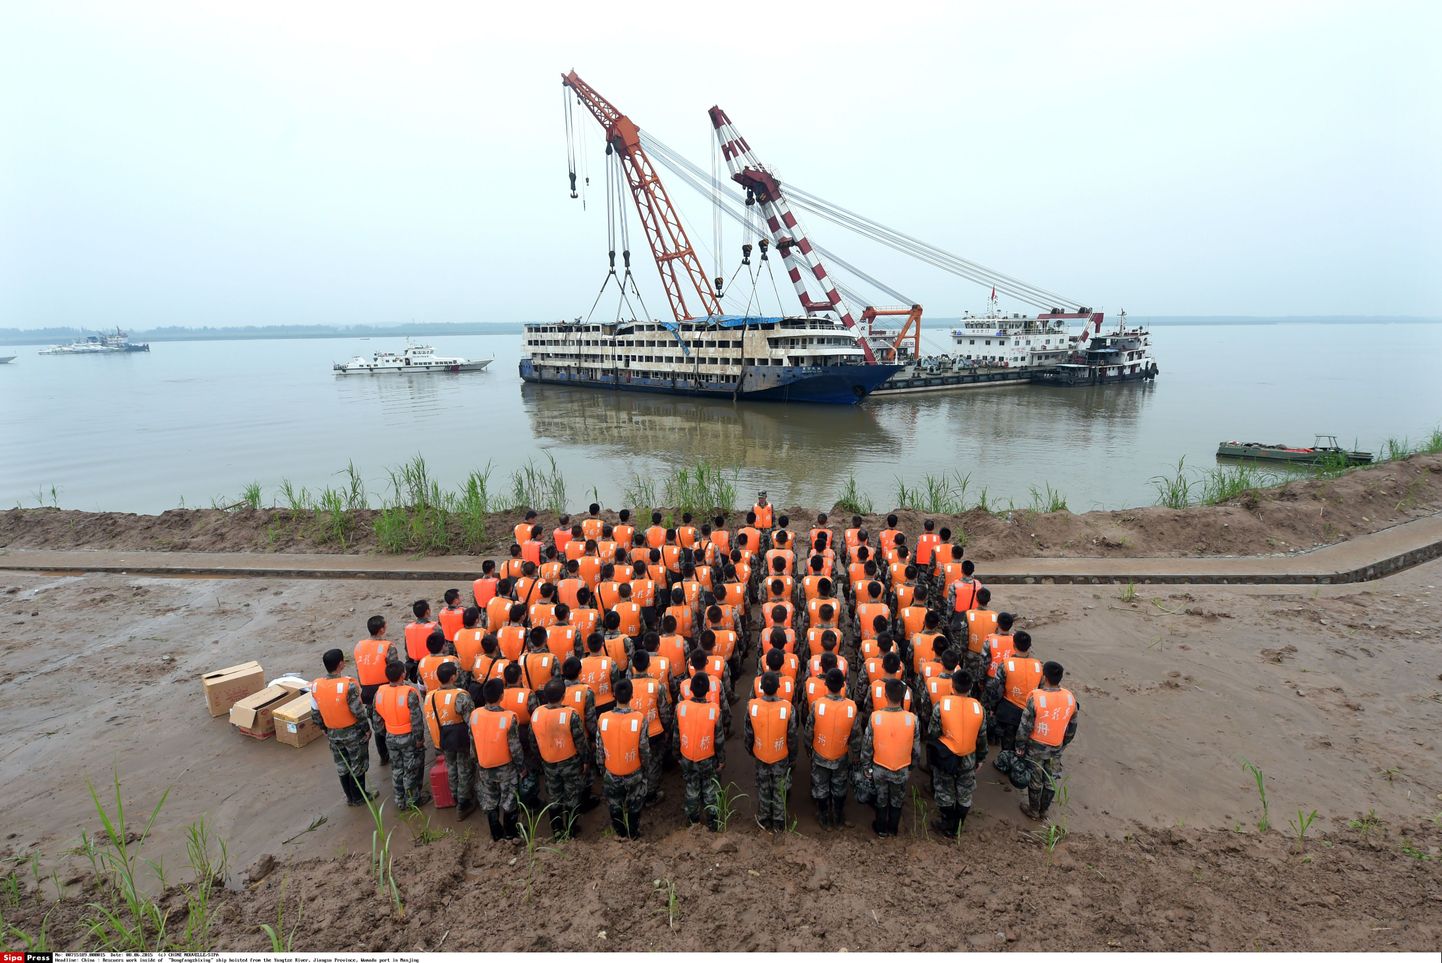 Hiina teatas Jangtse jõe laevaõnnetuse ohvrite arvuks 442